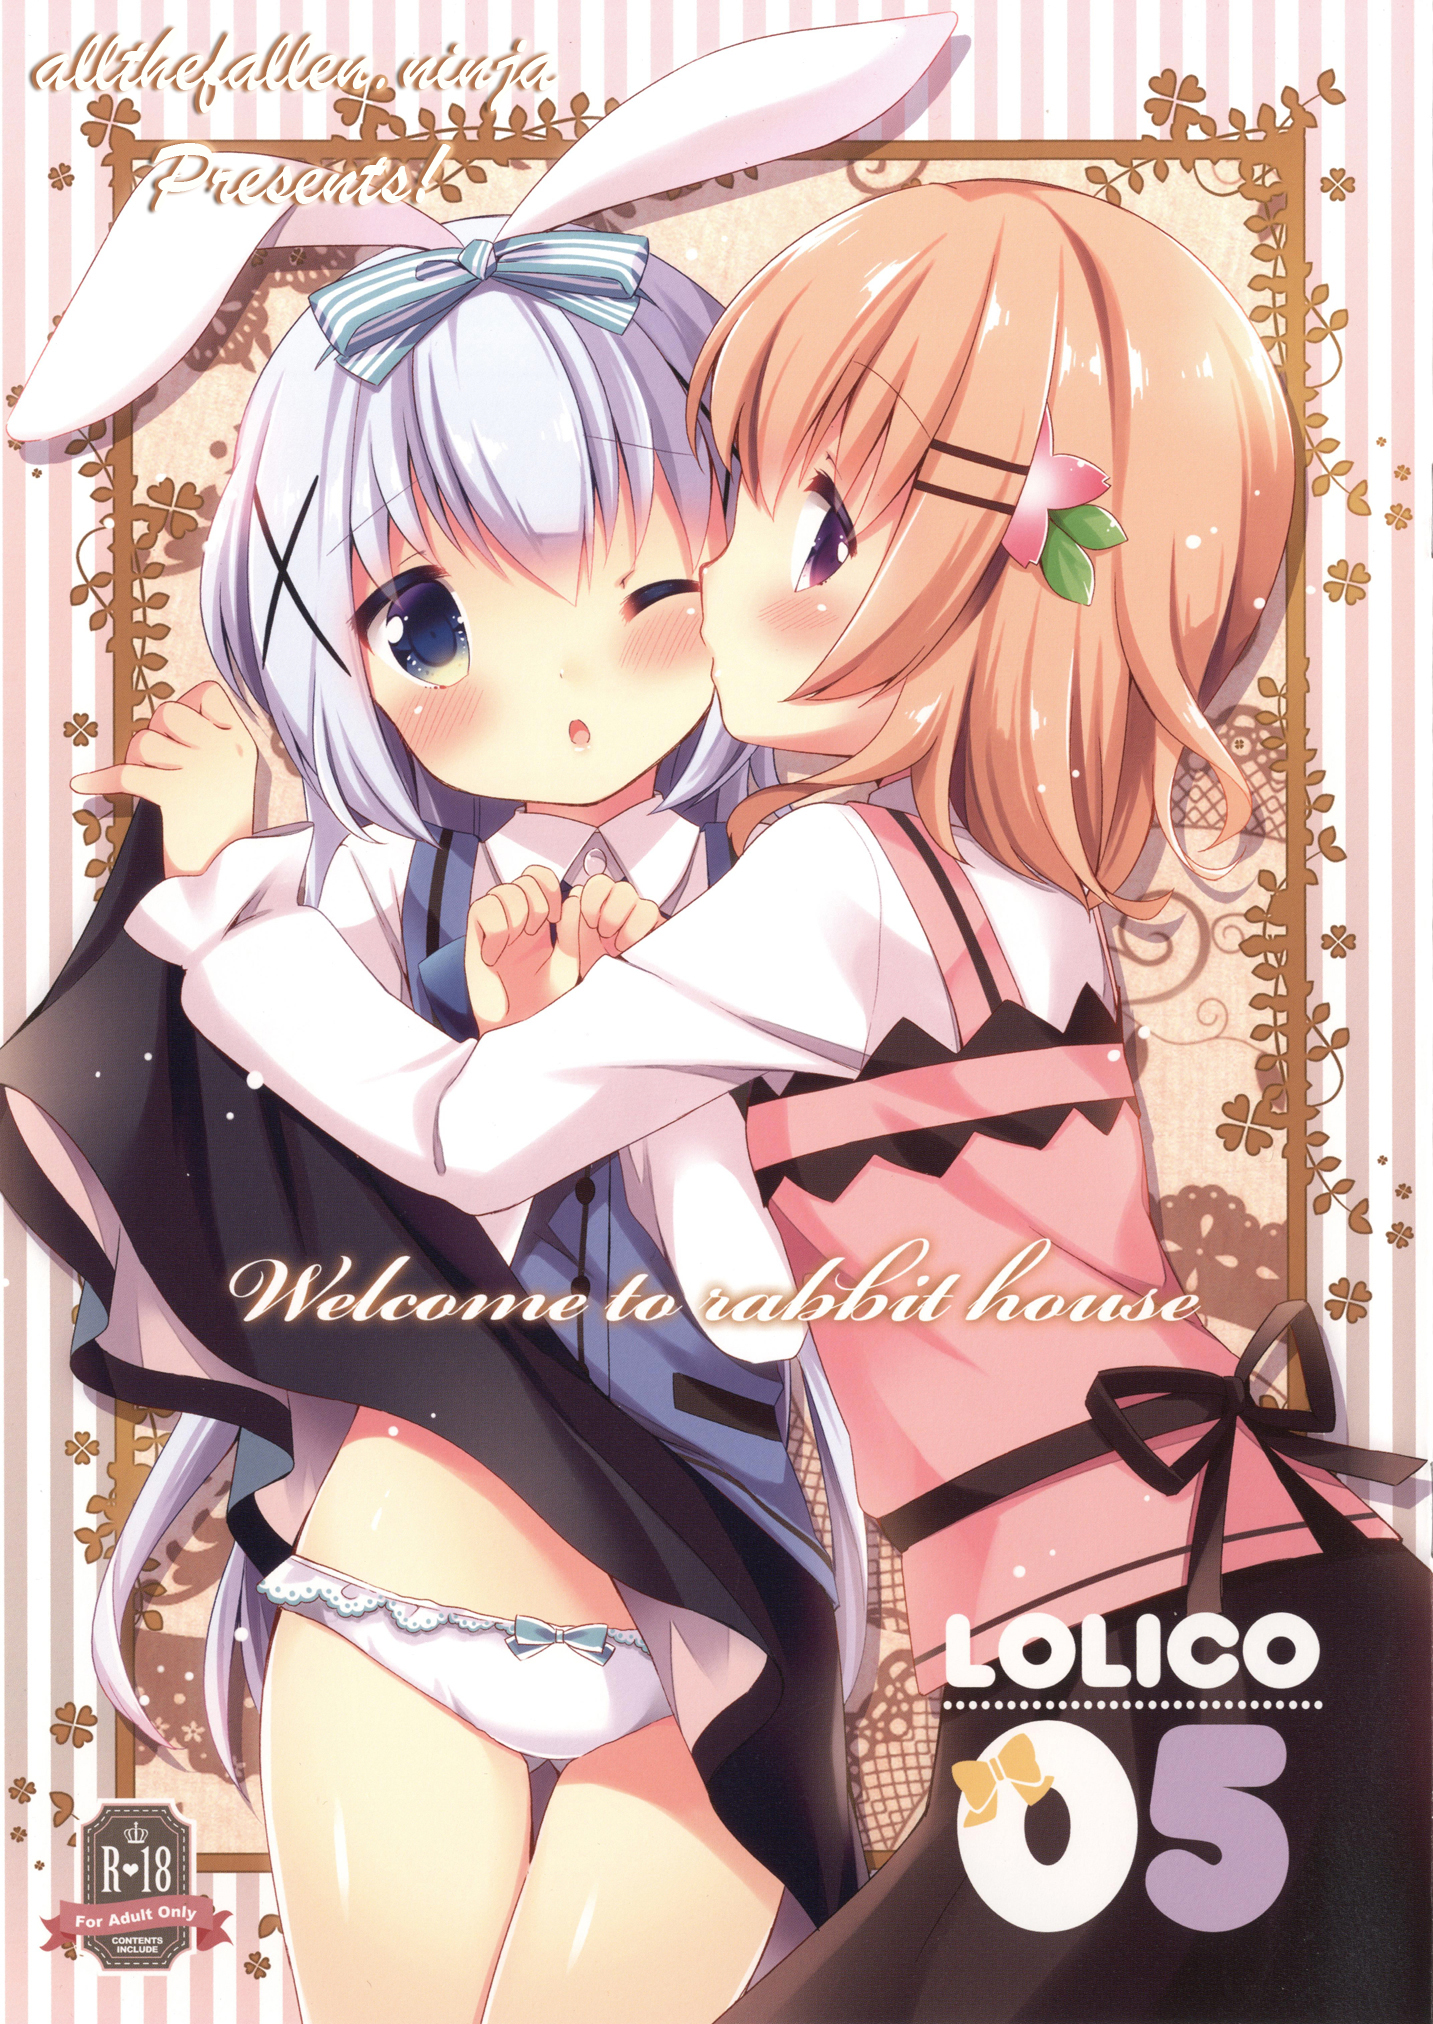 Koiko Irori (Lolipop Complete) Welcome to rabbit house LoliCo05 (Gochuumon wa Usagi desu ka?)